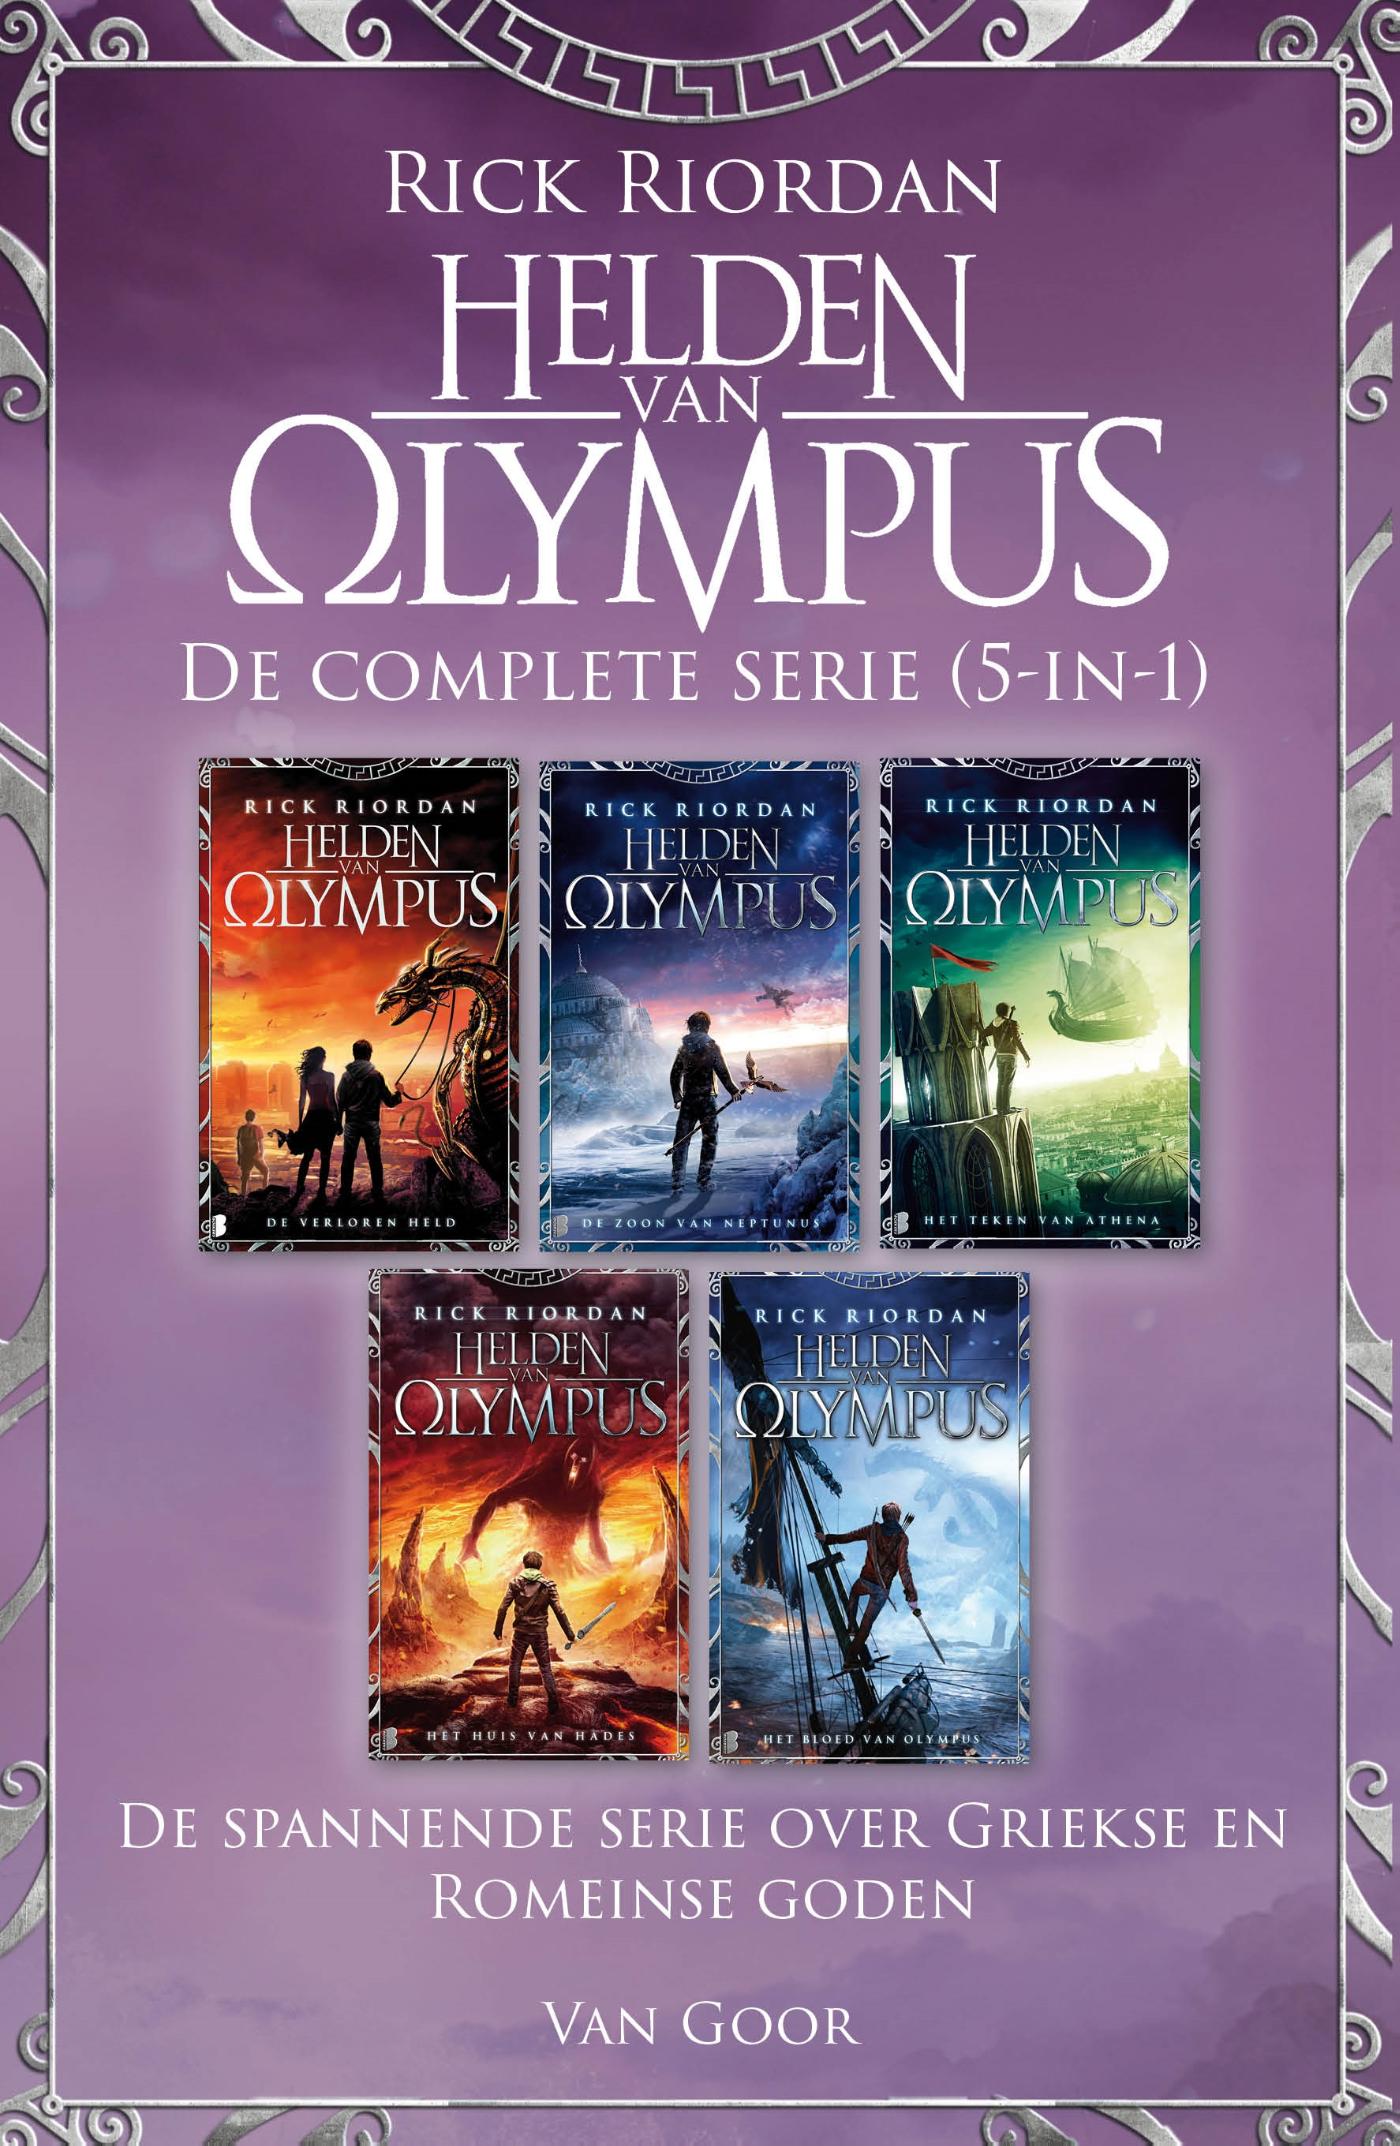 De helden van Olympus - De complete serie (5-in-1) (Ebook)